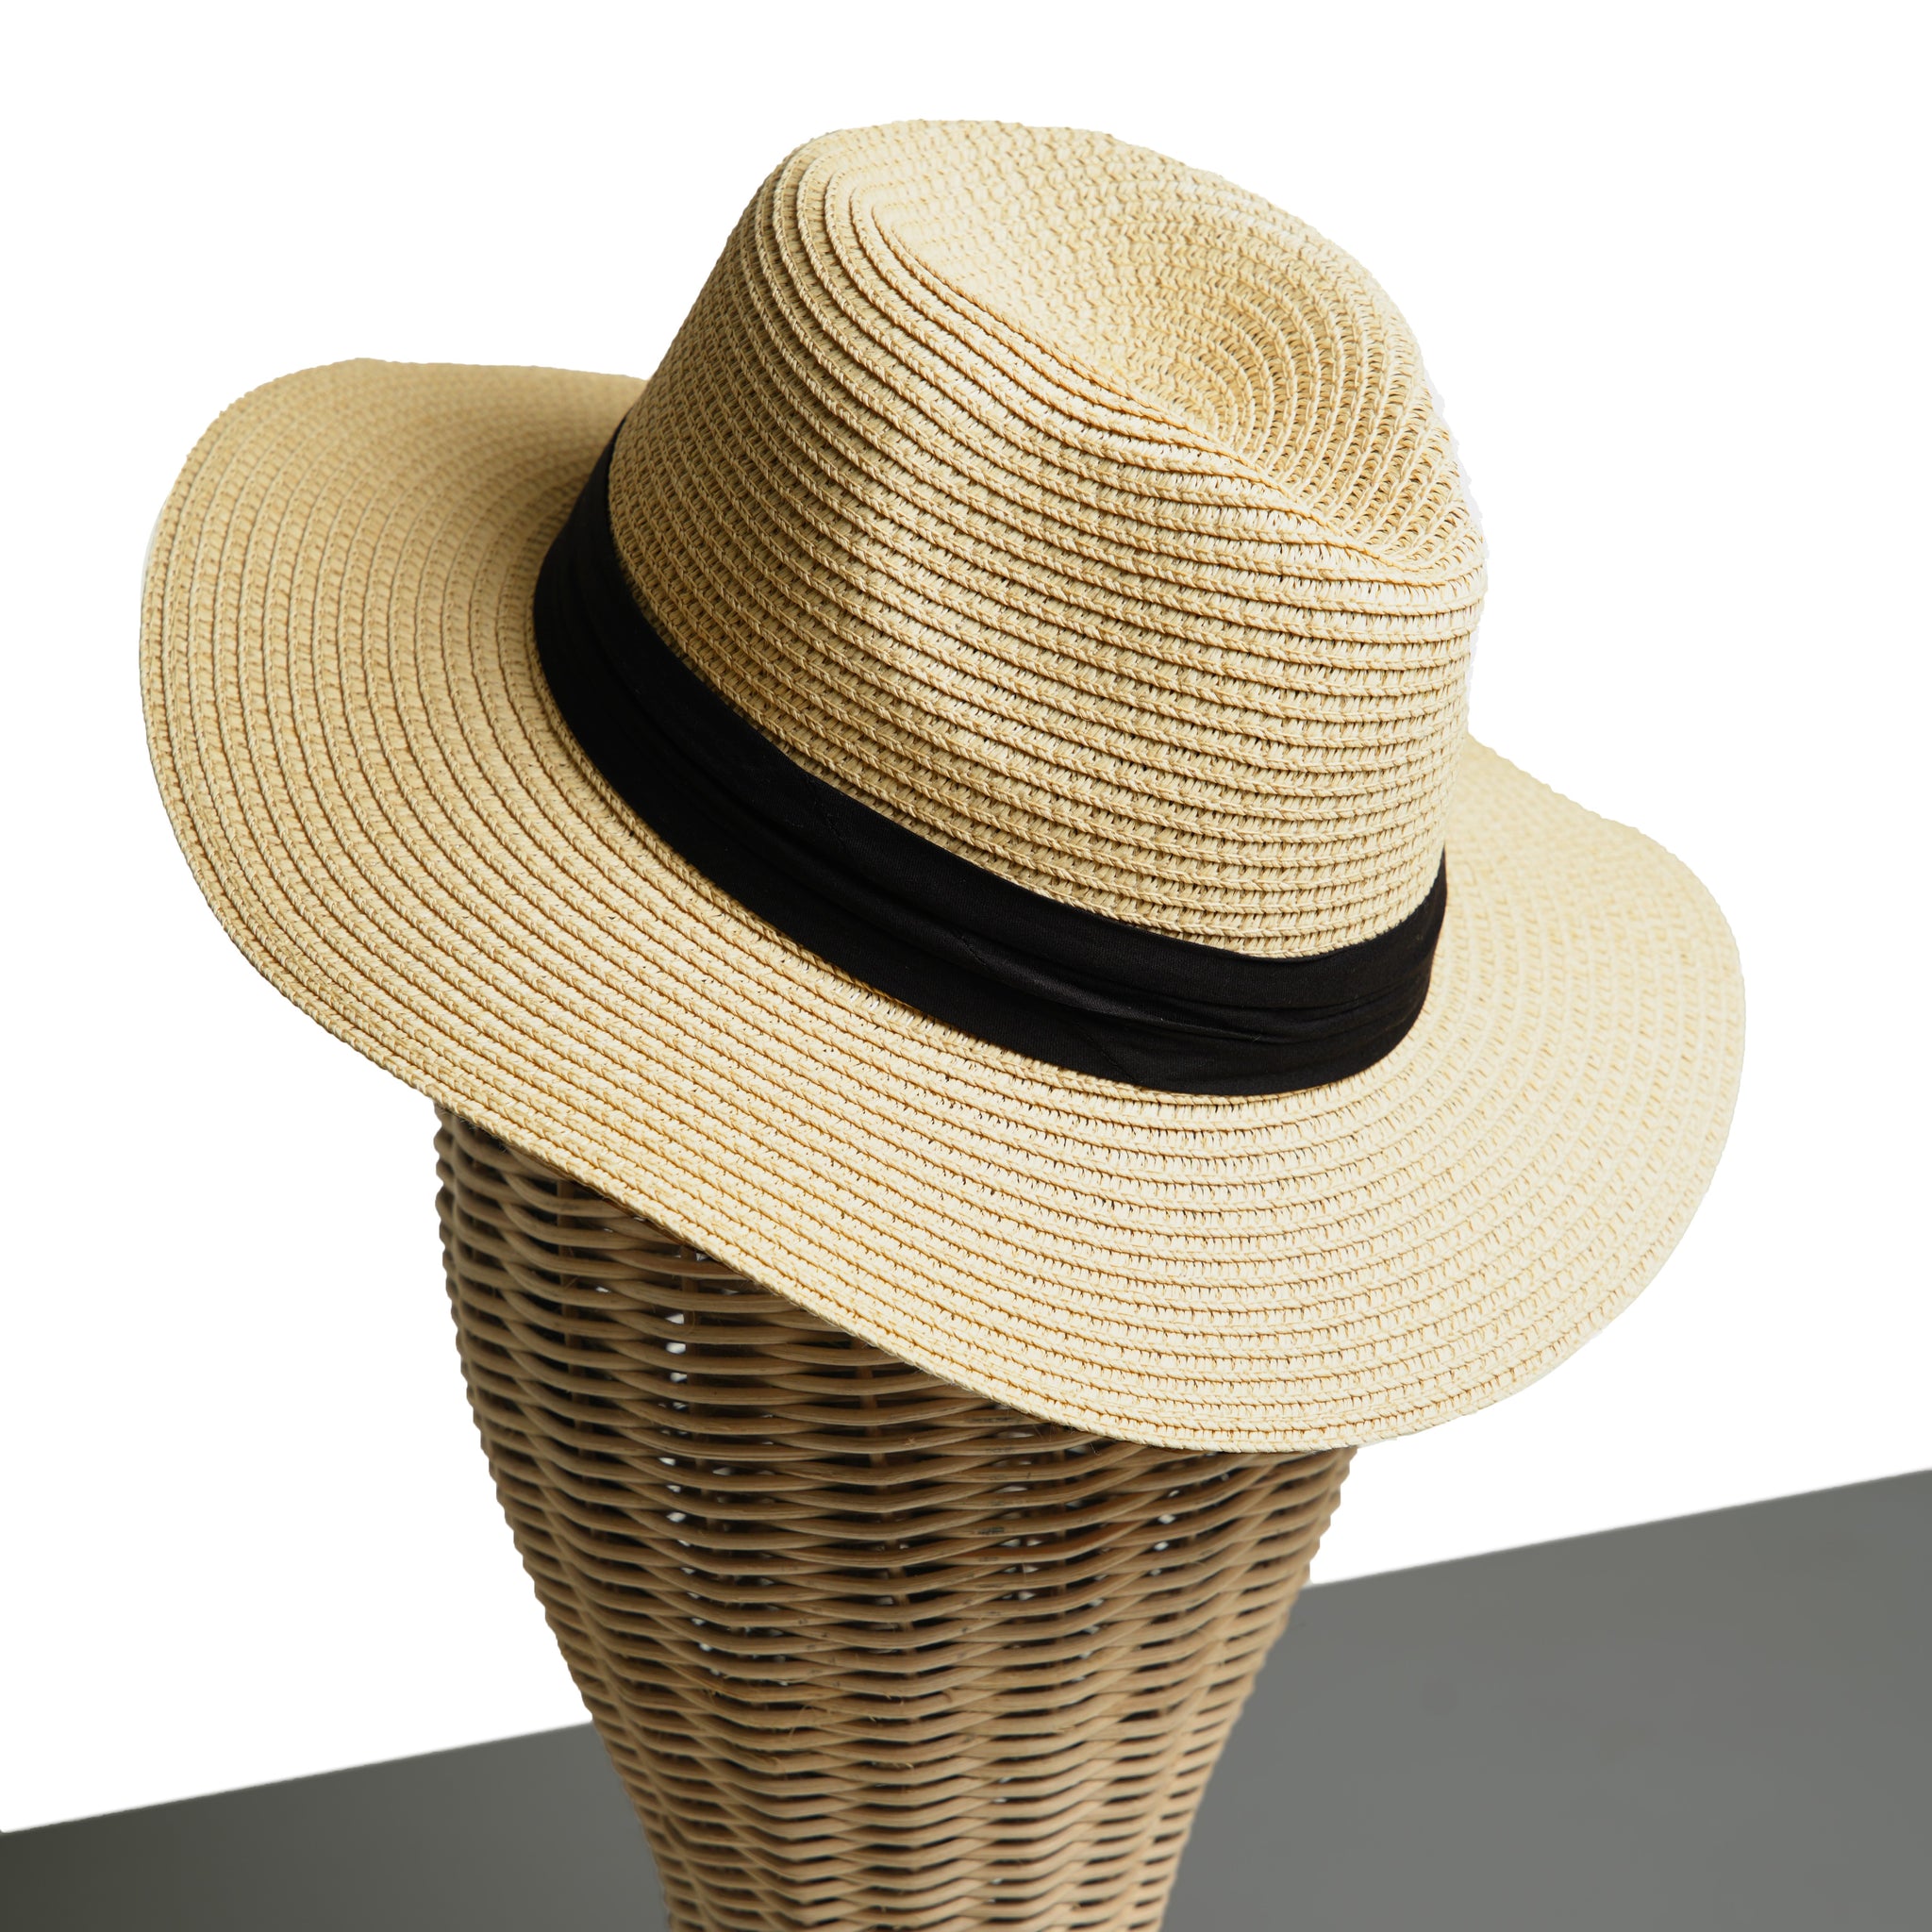 Chokore Summer Straw Hat (Beige)